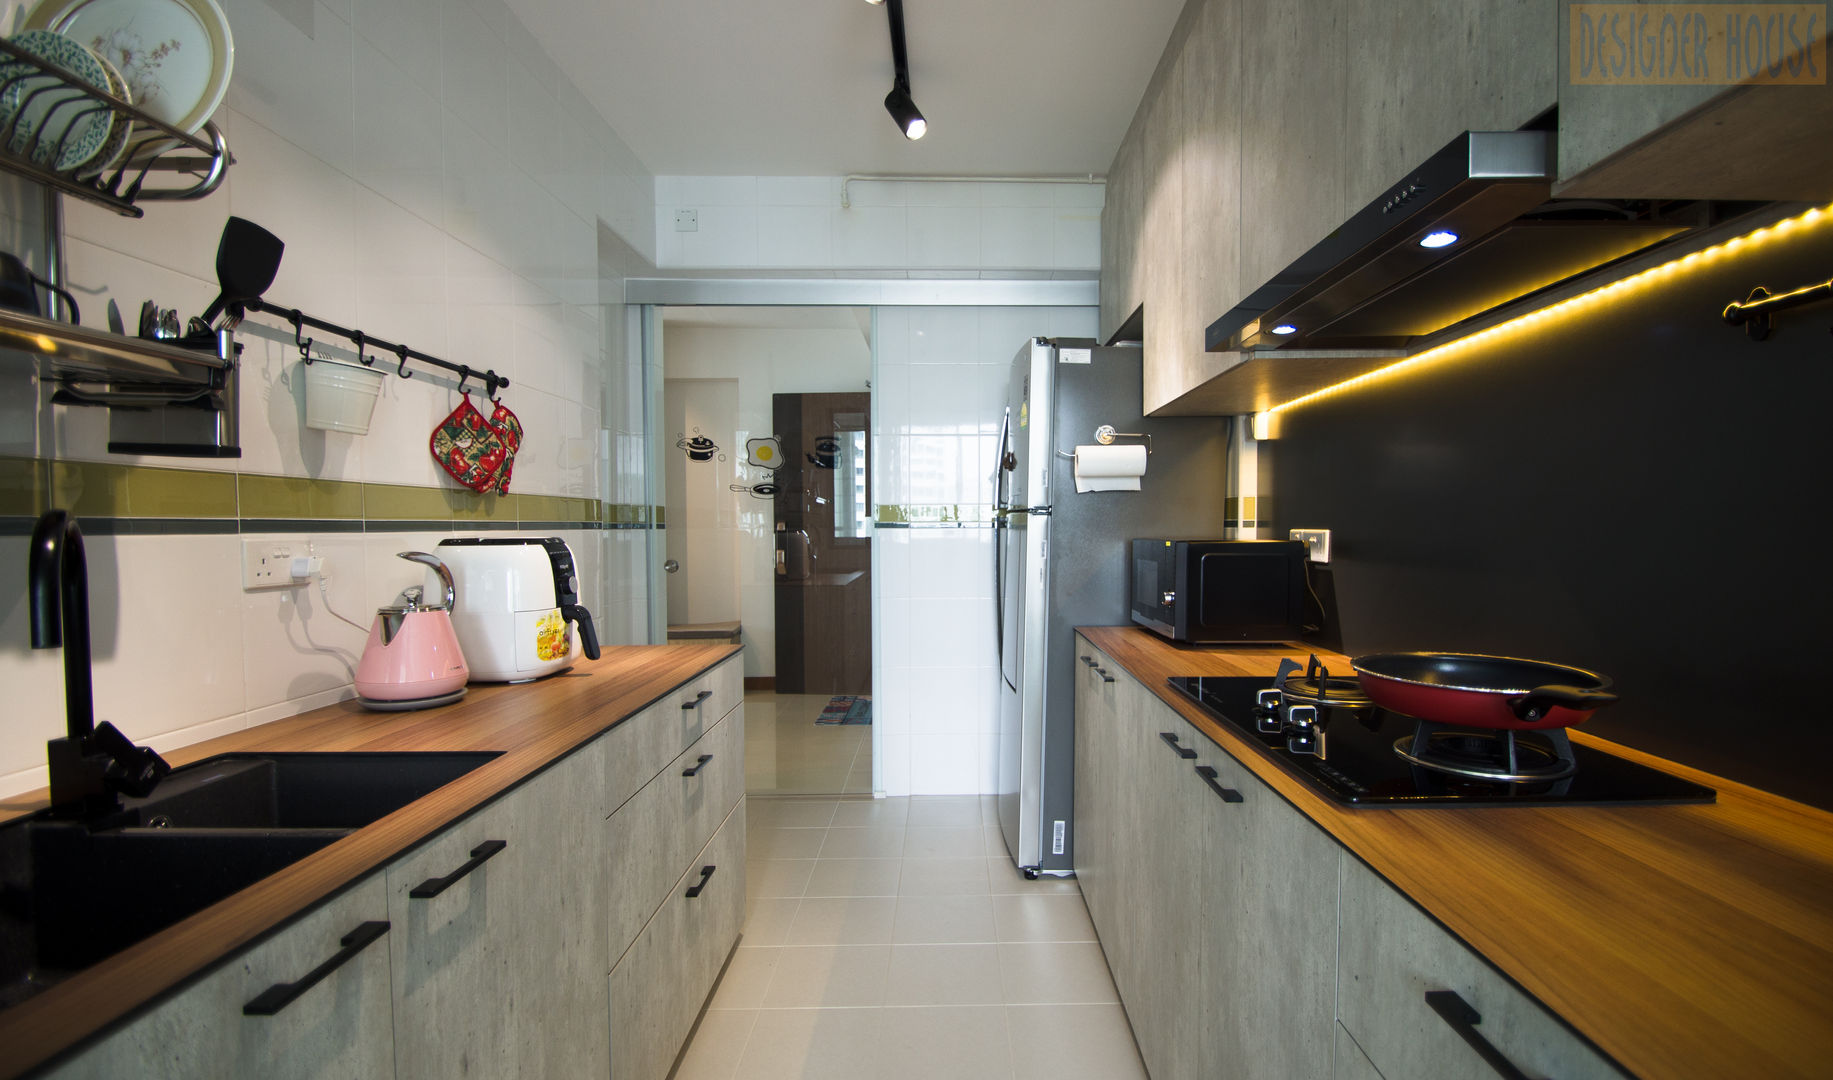 Punggol Waterway Brooks BTO, Designer House Designer House Minimalist kitchen Kitchen utensils